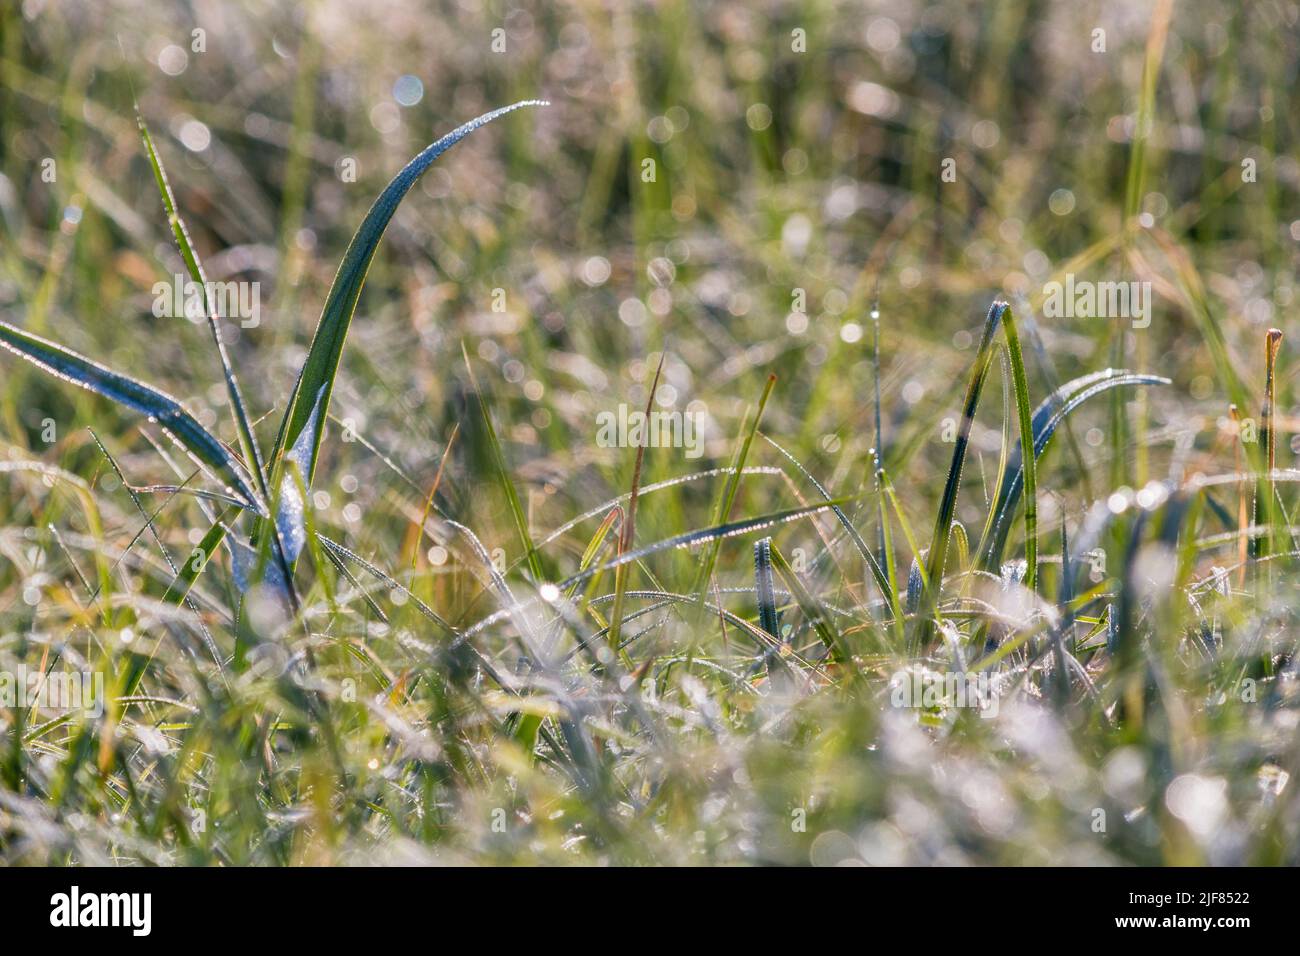 Wassertropfen vom Morgentau im Gras, Detailaufnahme, Water drops from morning dew in grass, close up Stock Photo